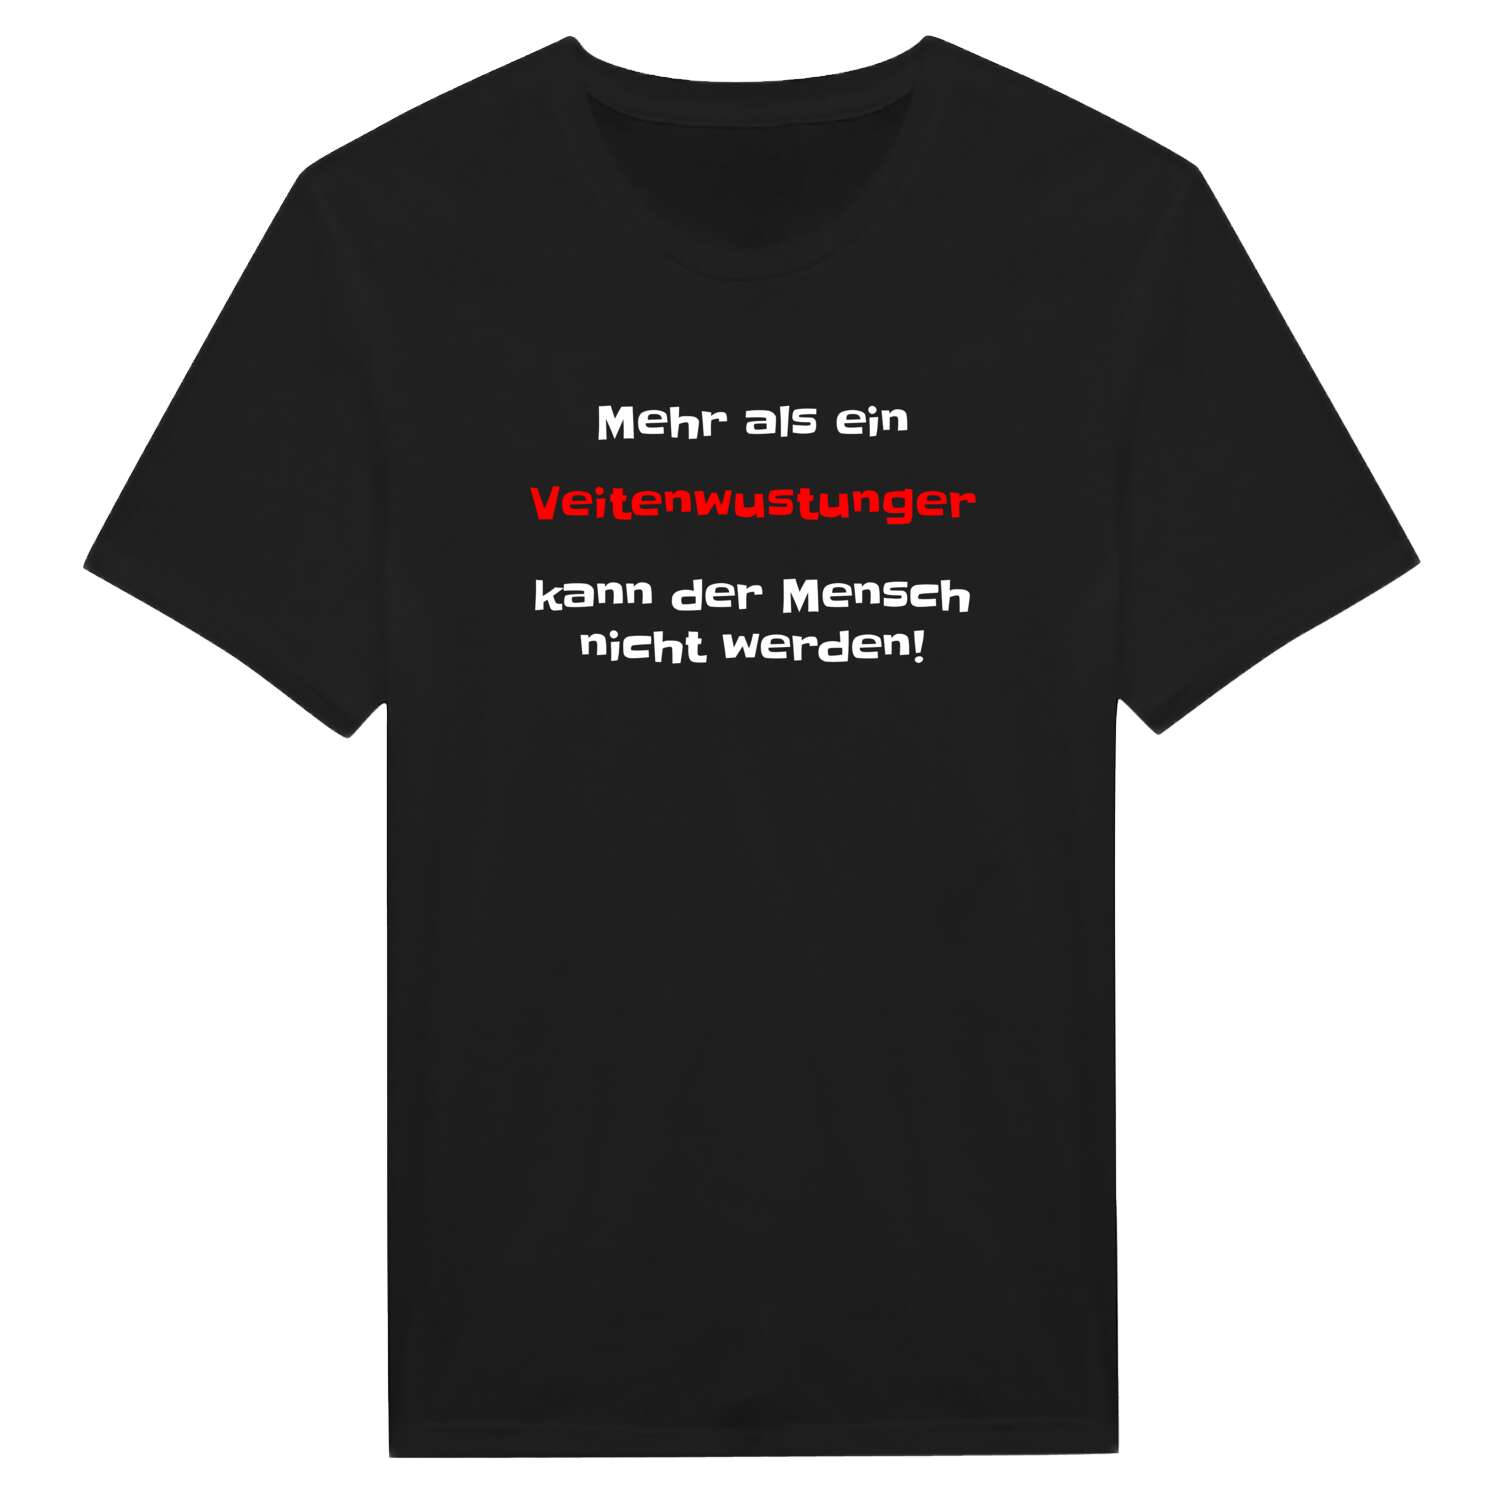 Veitenwustung T-Shirt »Mehr als ein«